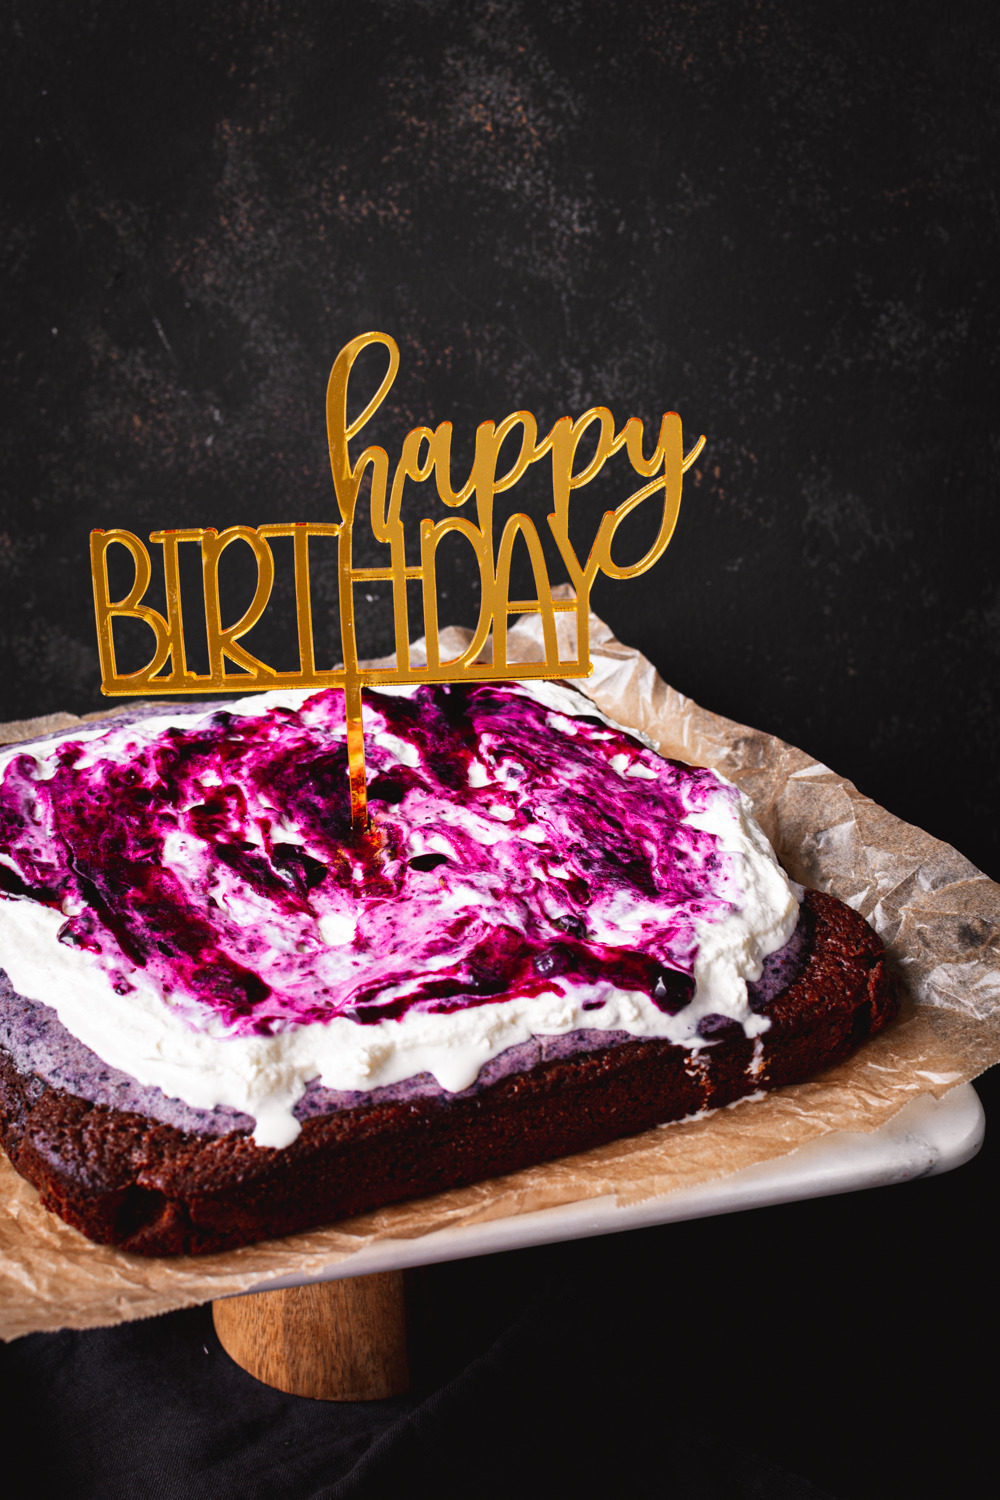 Brownie mit Schlagsahne und Blaubeer-Kompott und Cake Topper "Happy Birthday"